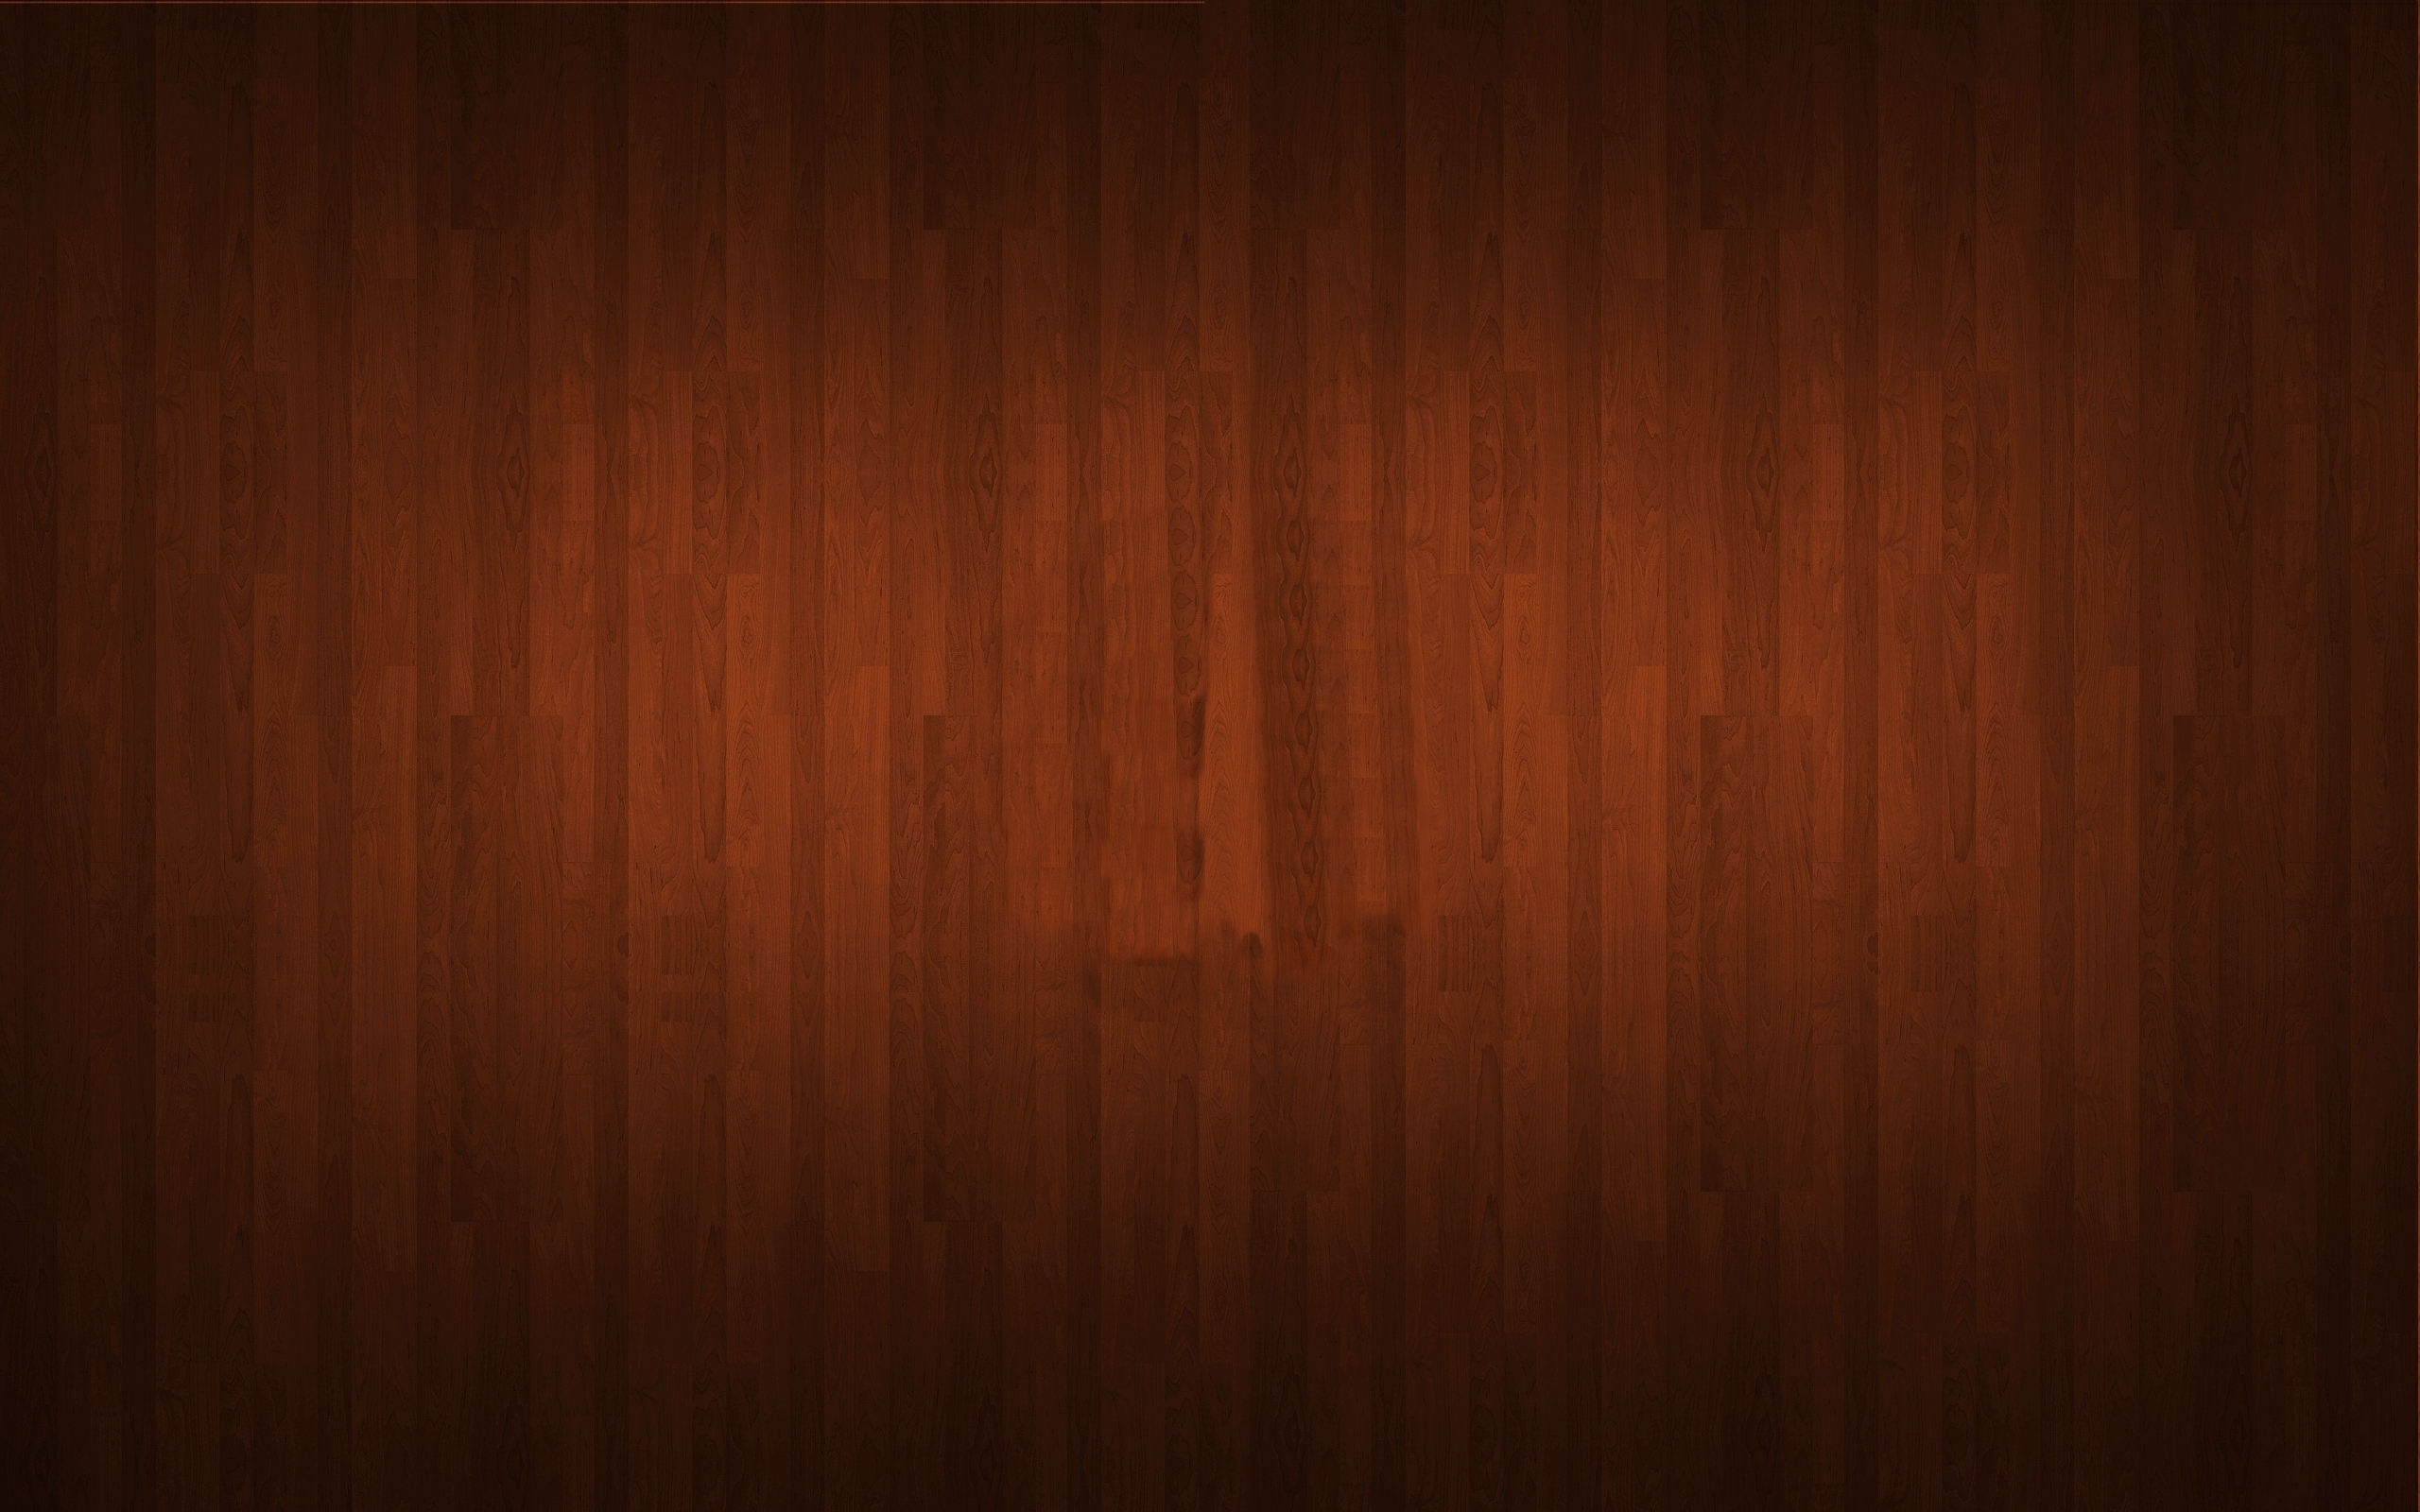 Wallpaper, dark, brown, texture, wooden, floor, hardwood, plywood, computer wallpaper, wood flooring, wood stain, varnish, solid 2560x1600